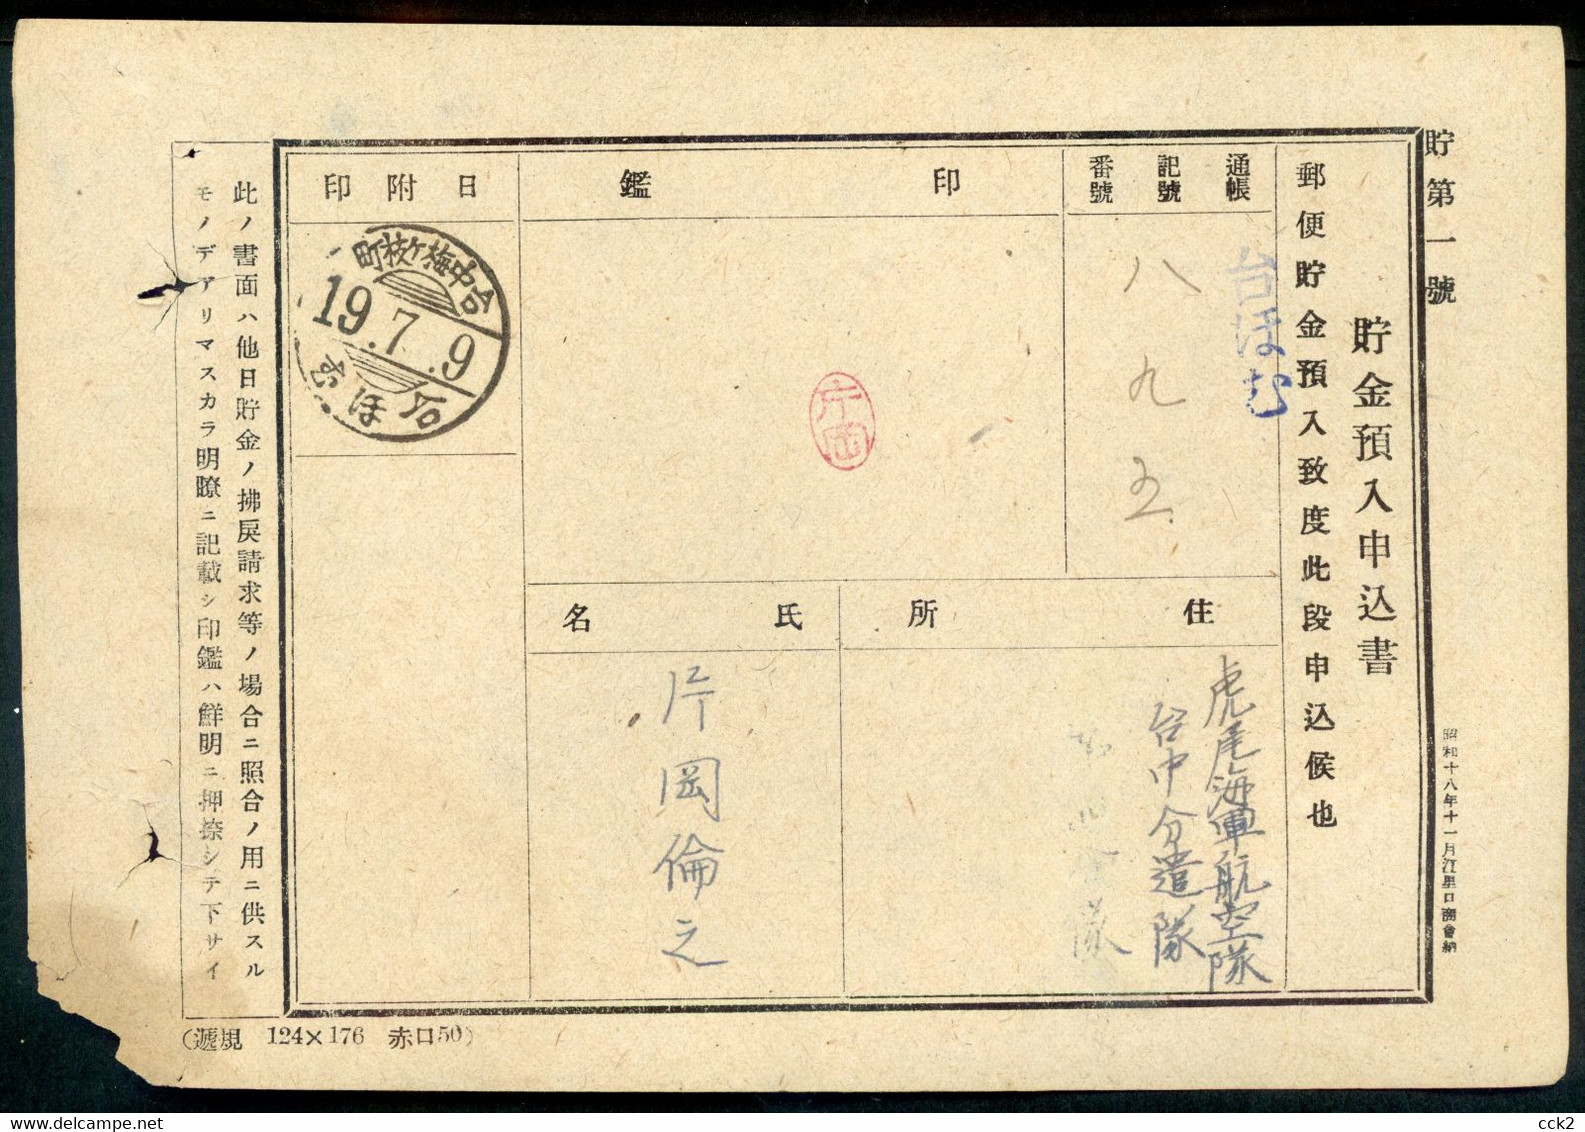 JAPAN OCCUPATION TAIWAN- Postal Convenience Savings Fund Advance Deposit Application Form (2) - 1945 Japanisch Besetzung